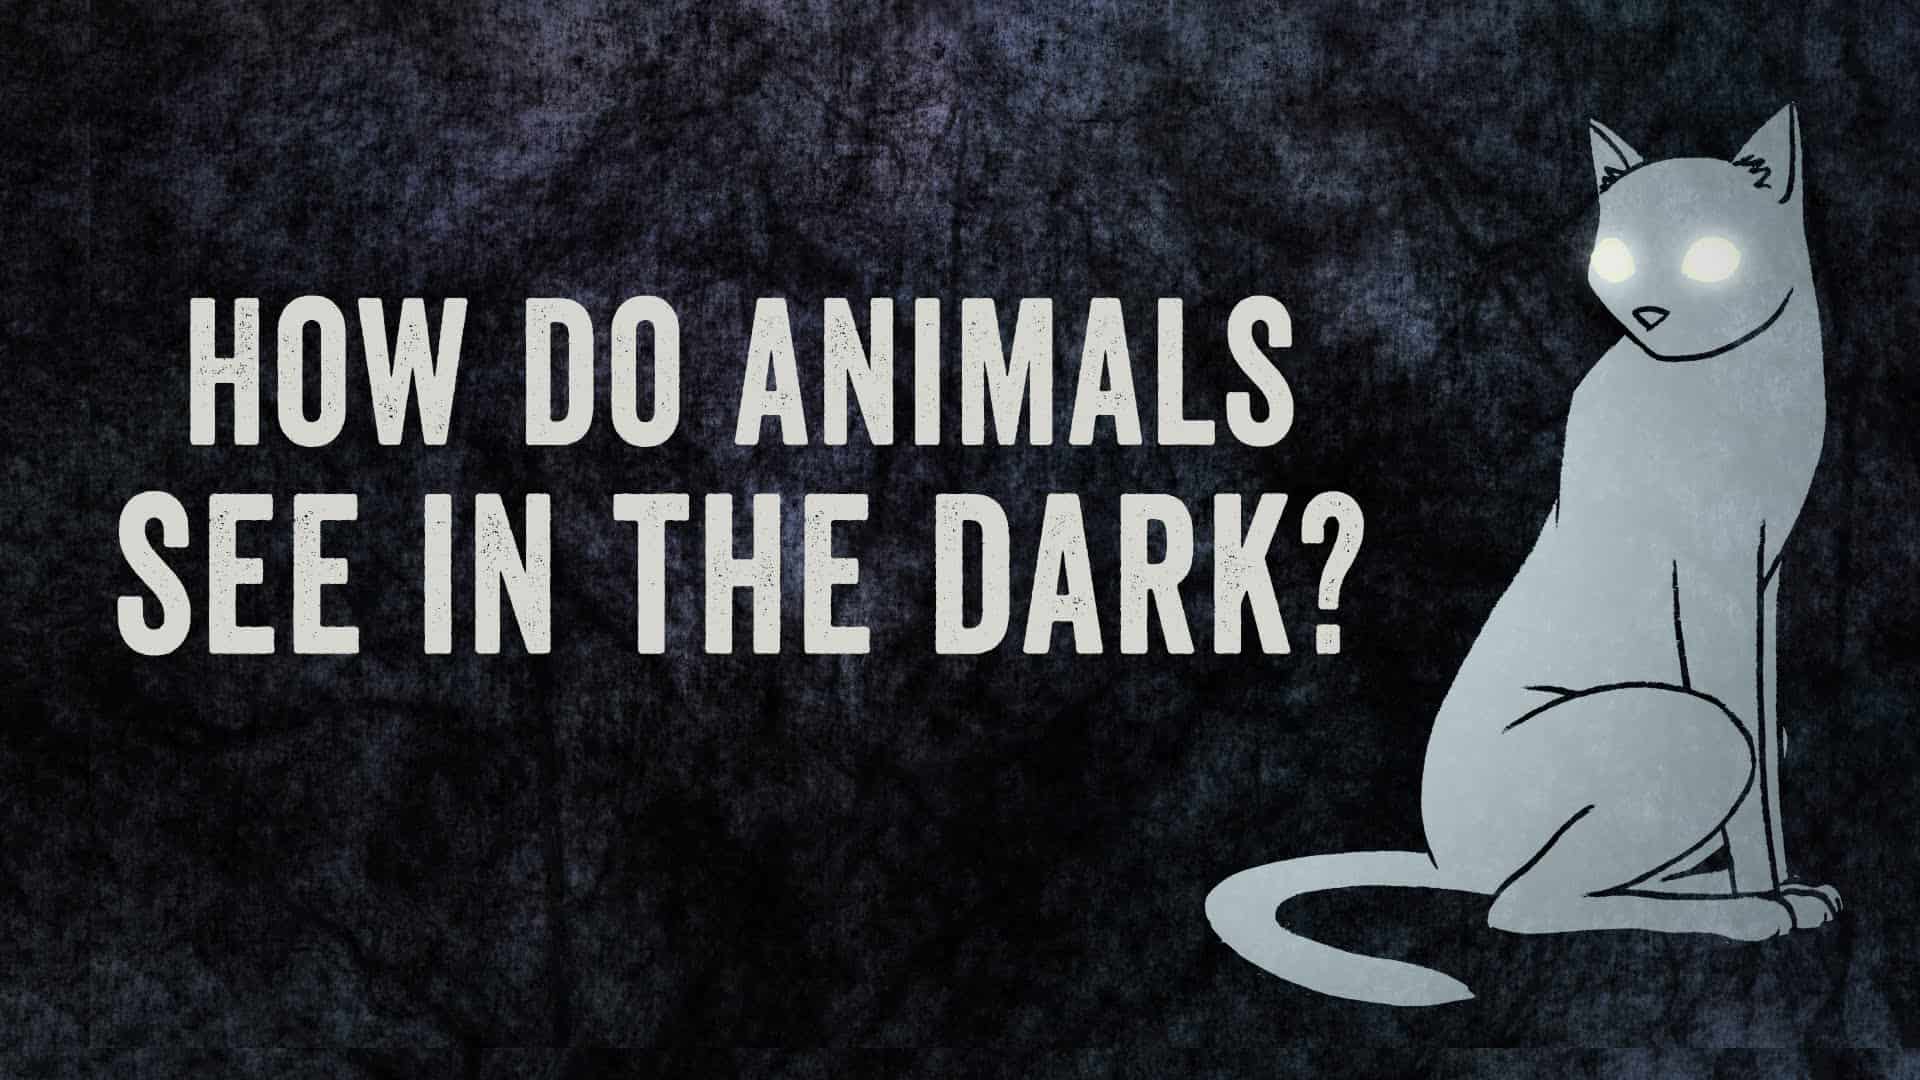 Hayvanlar karanlıkta nasıl görebilir?